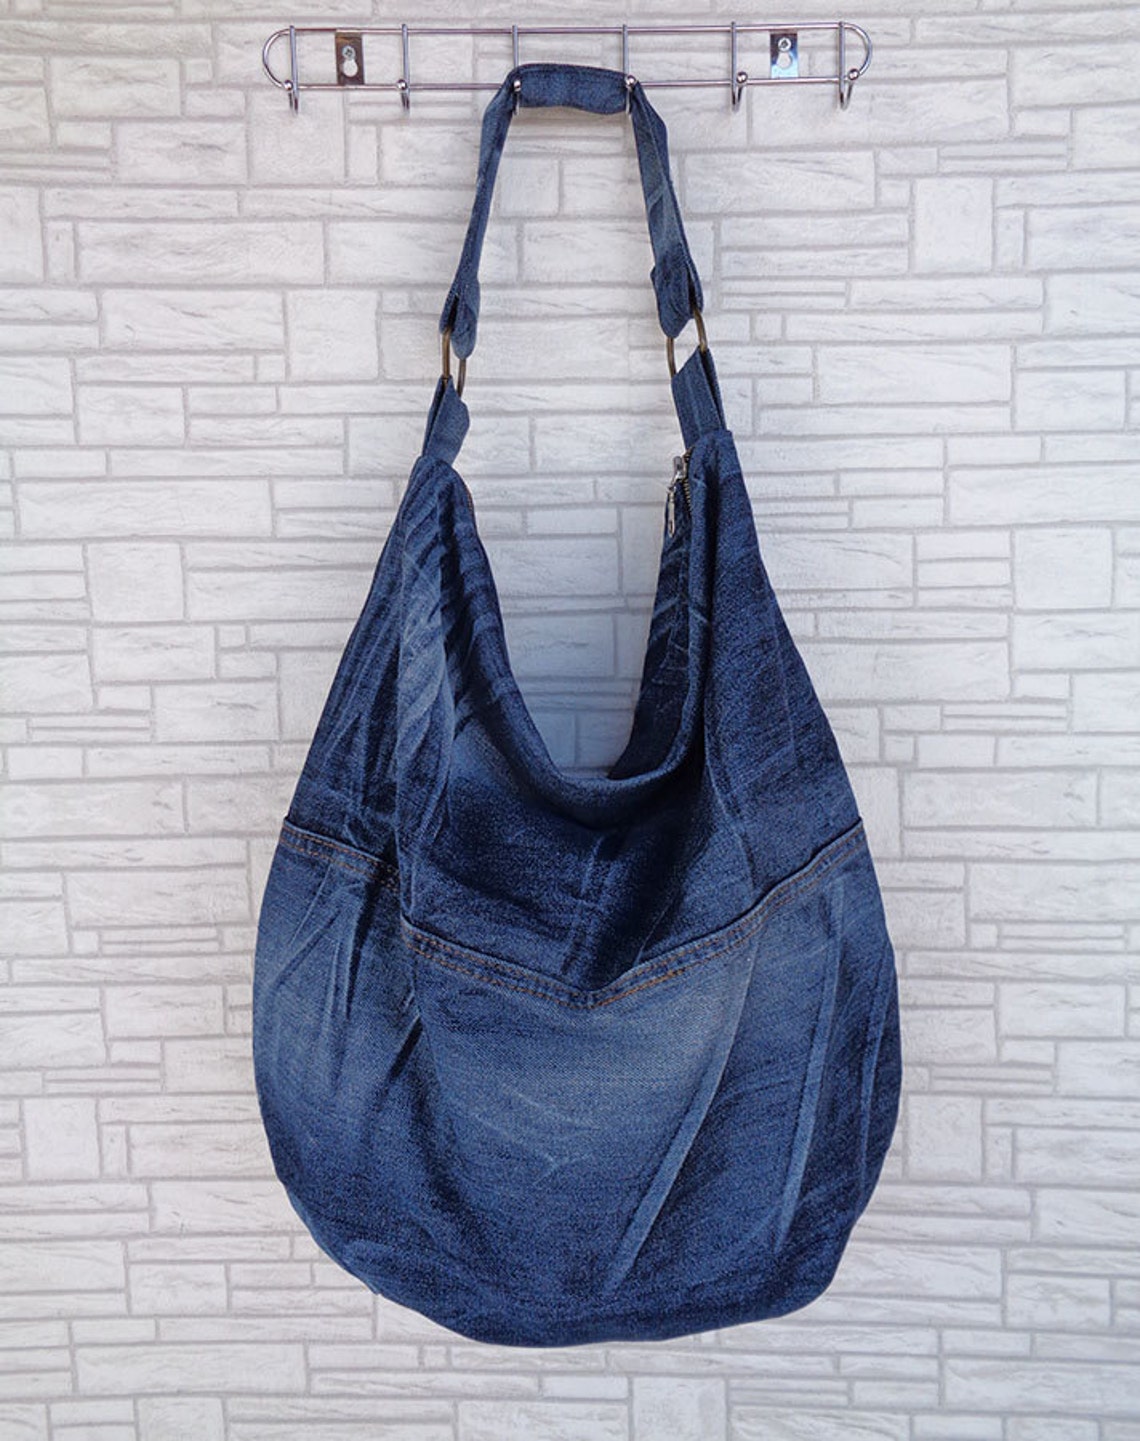 Large hobo bag slouchy tote handbag purse shopper weekend | Etsy